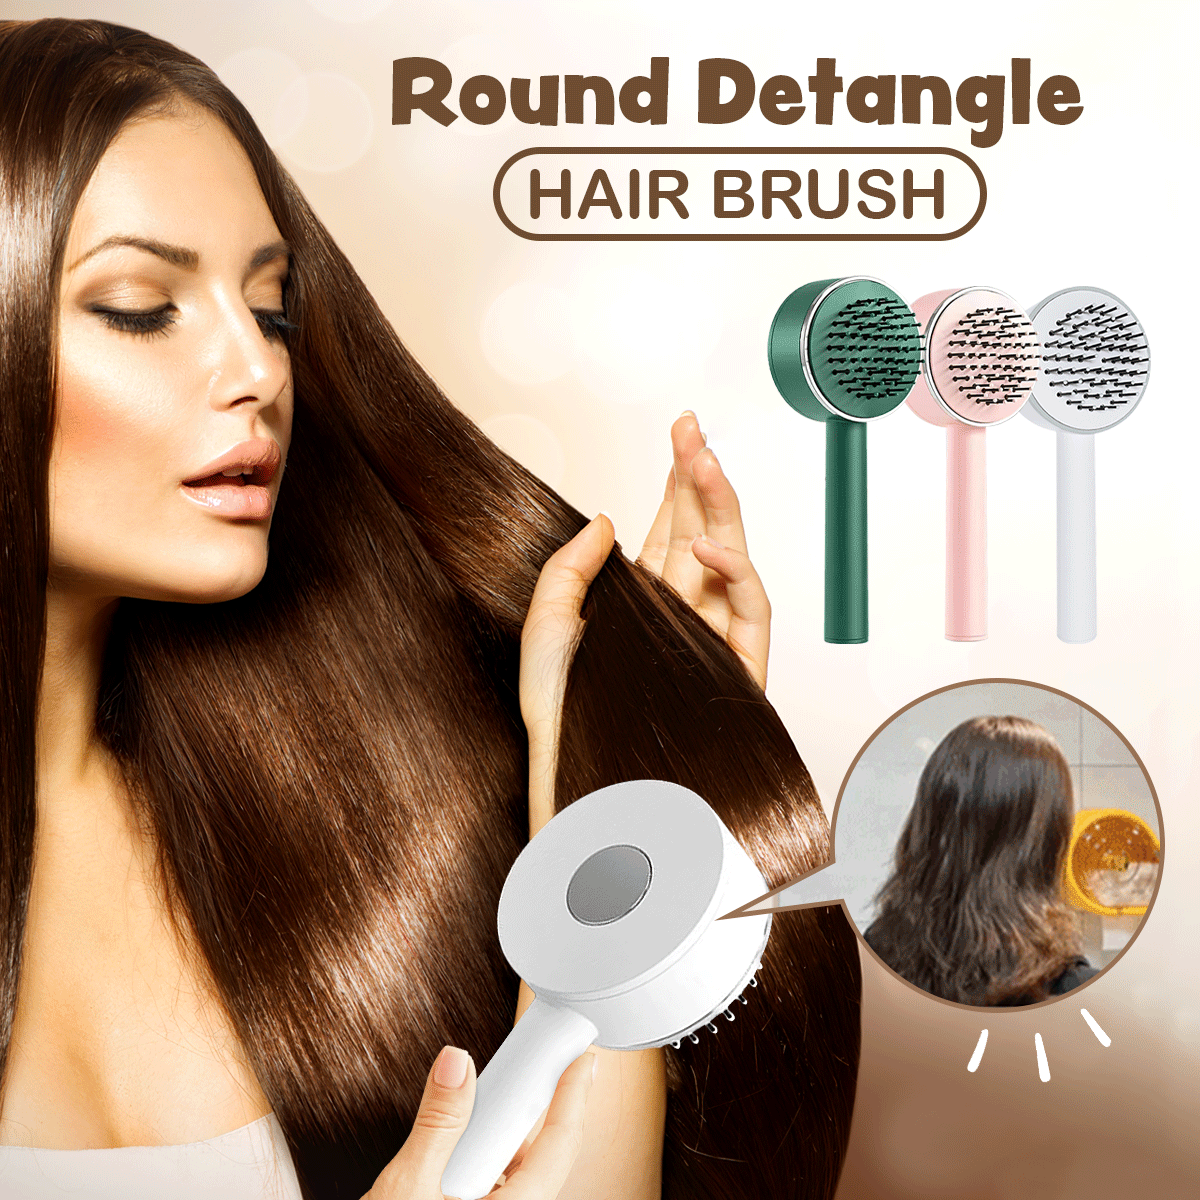 Round Detangle Hair Brush